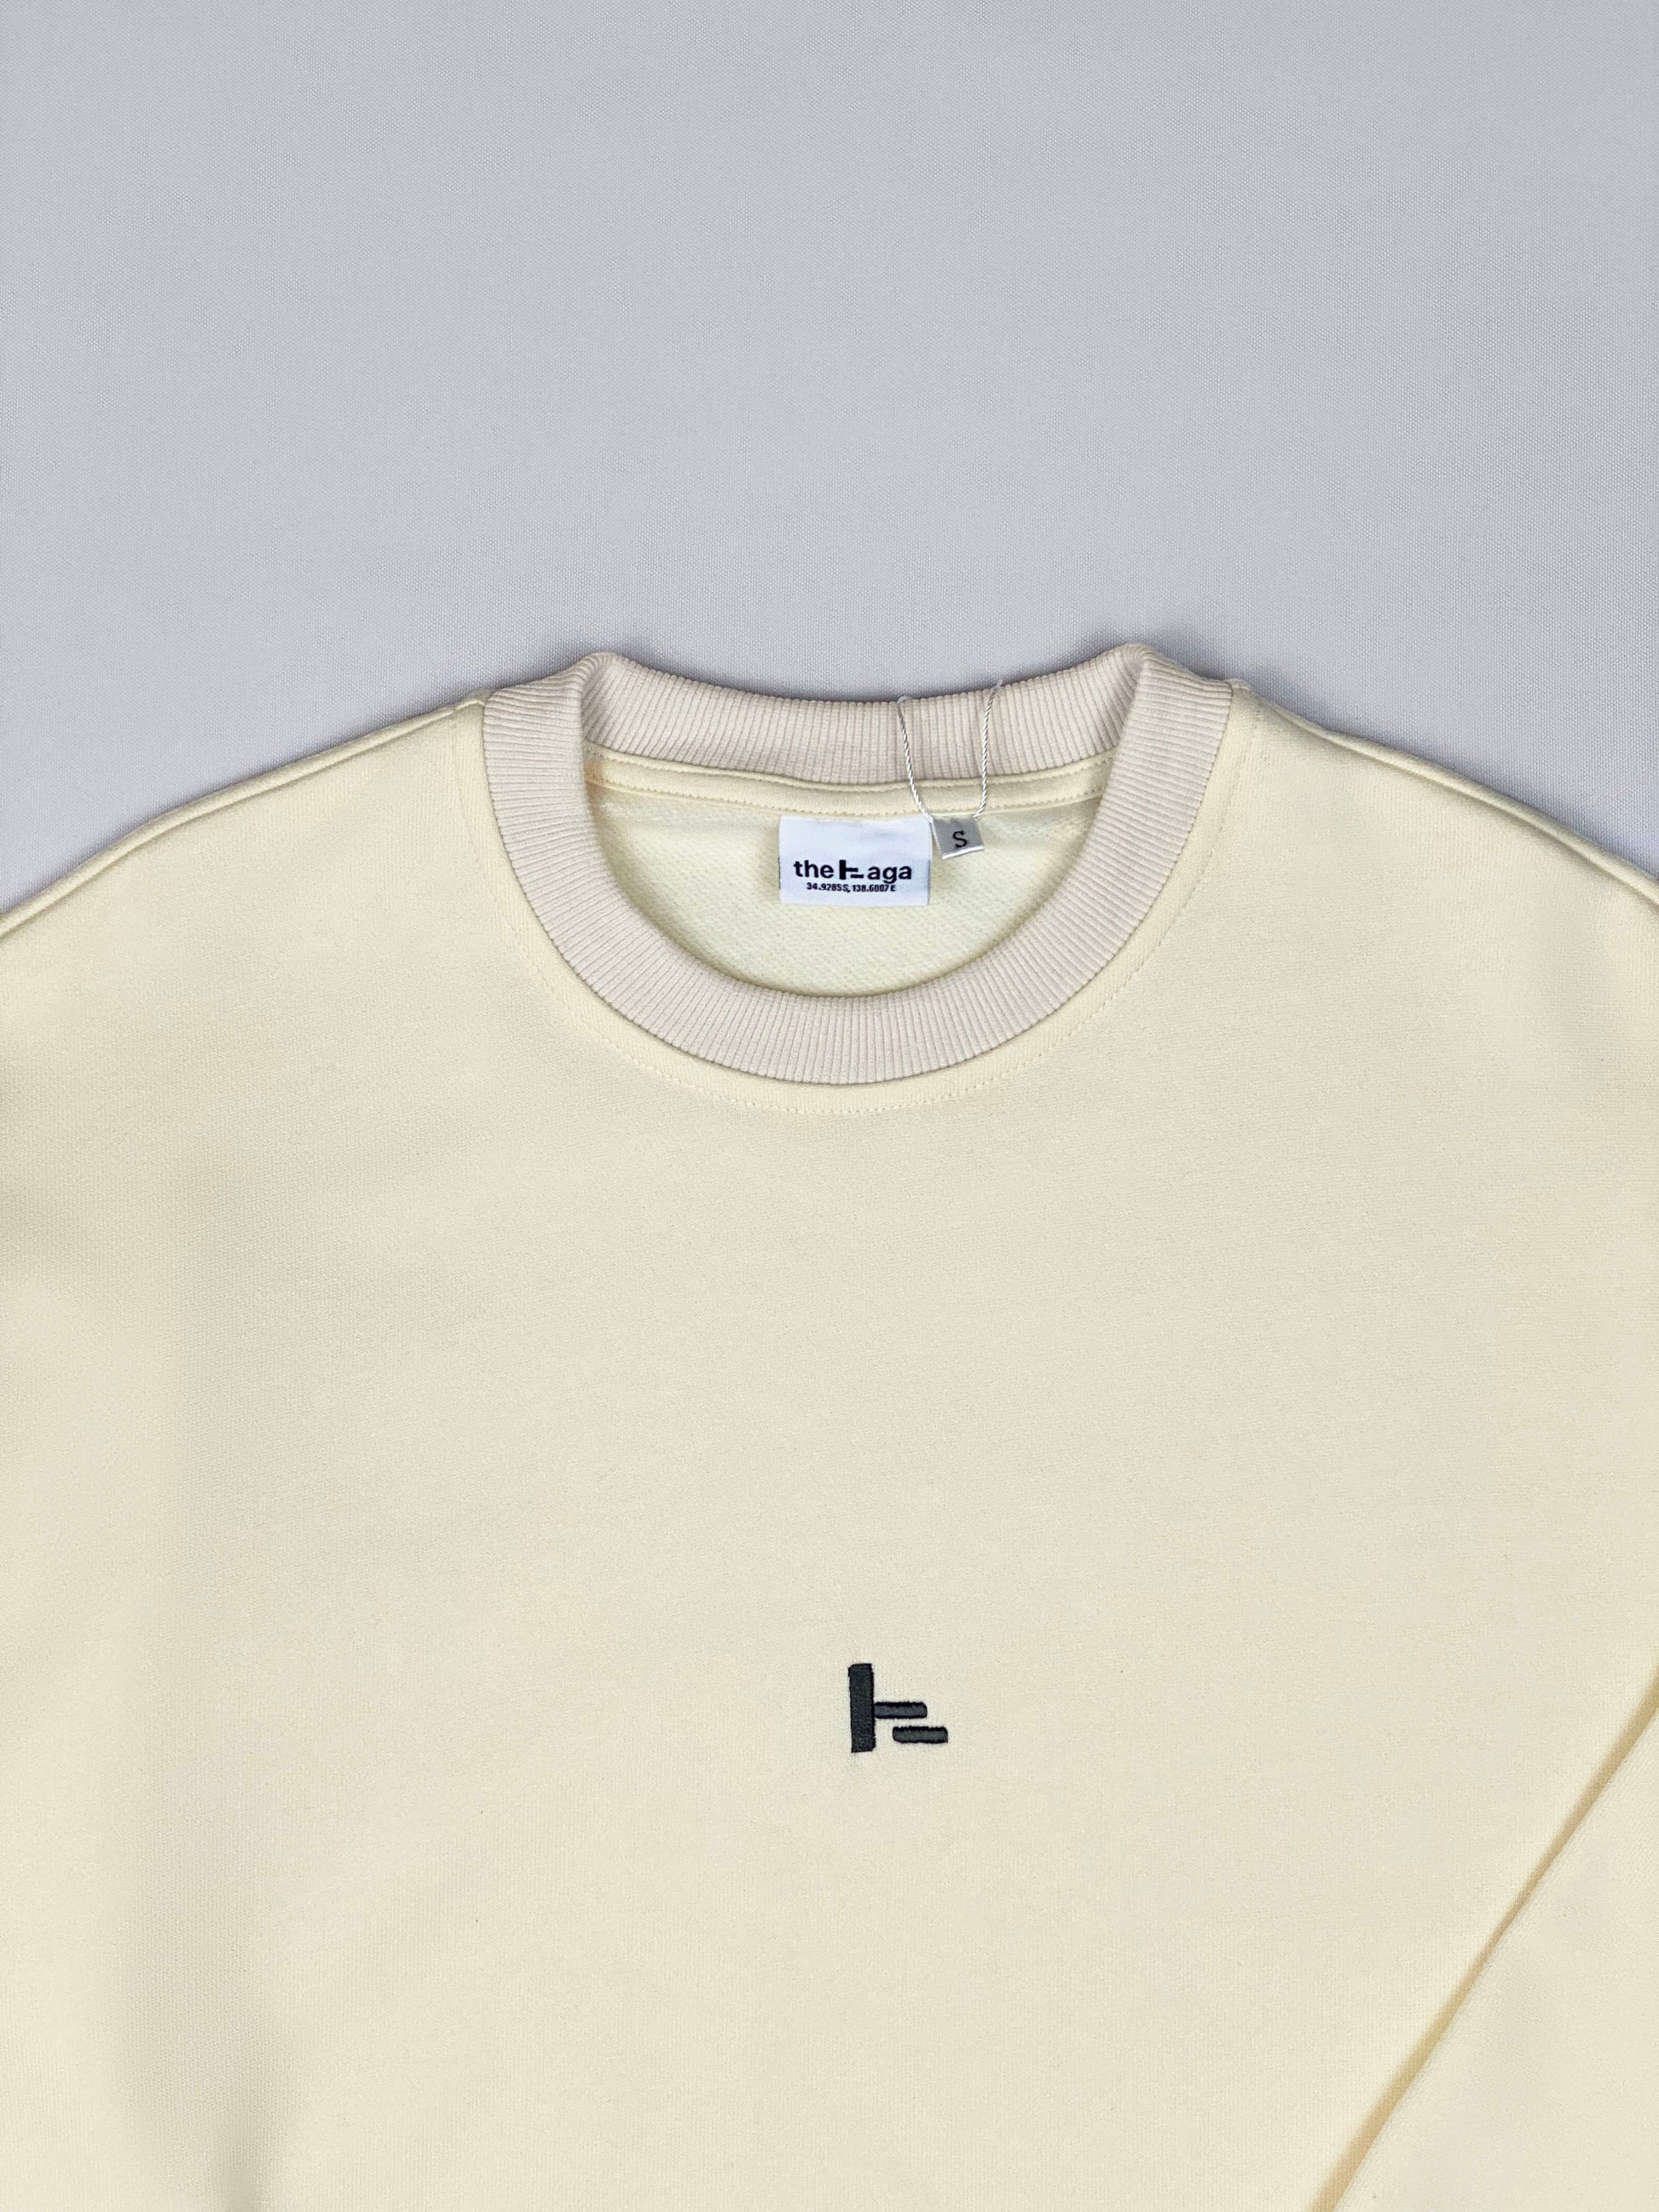 Vintage Sweatshirt & Crewneck (Yellow)